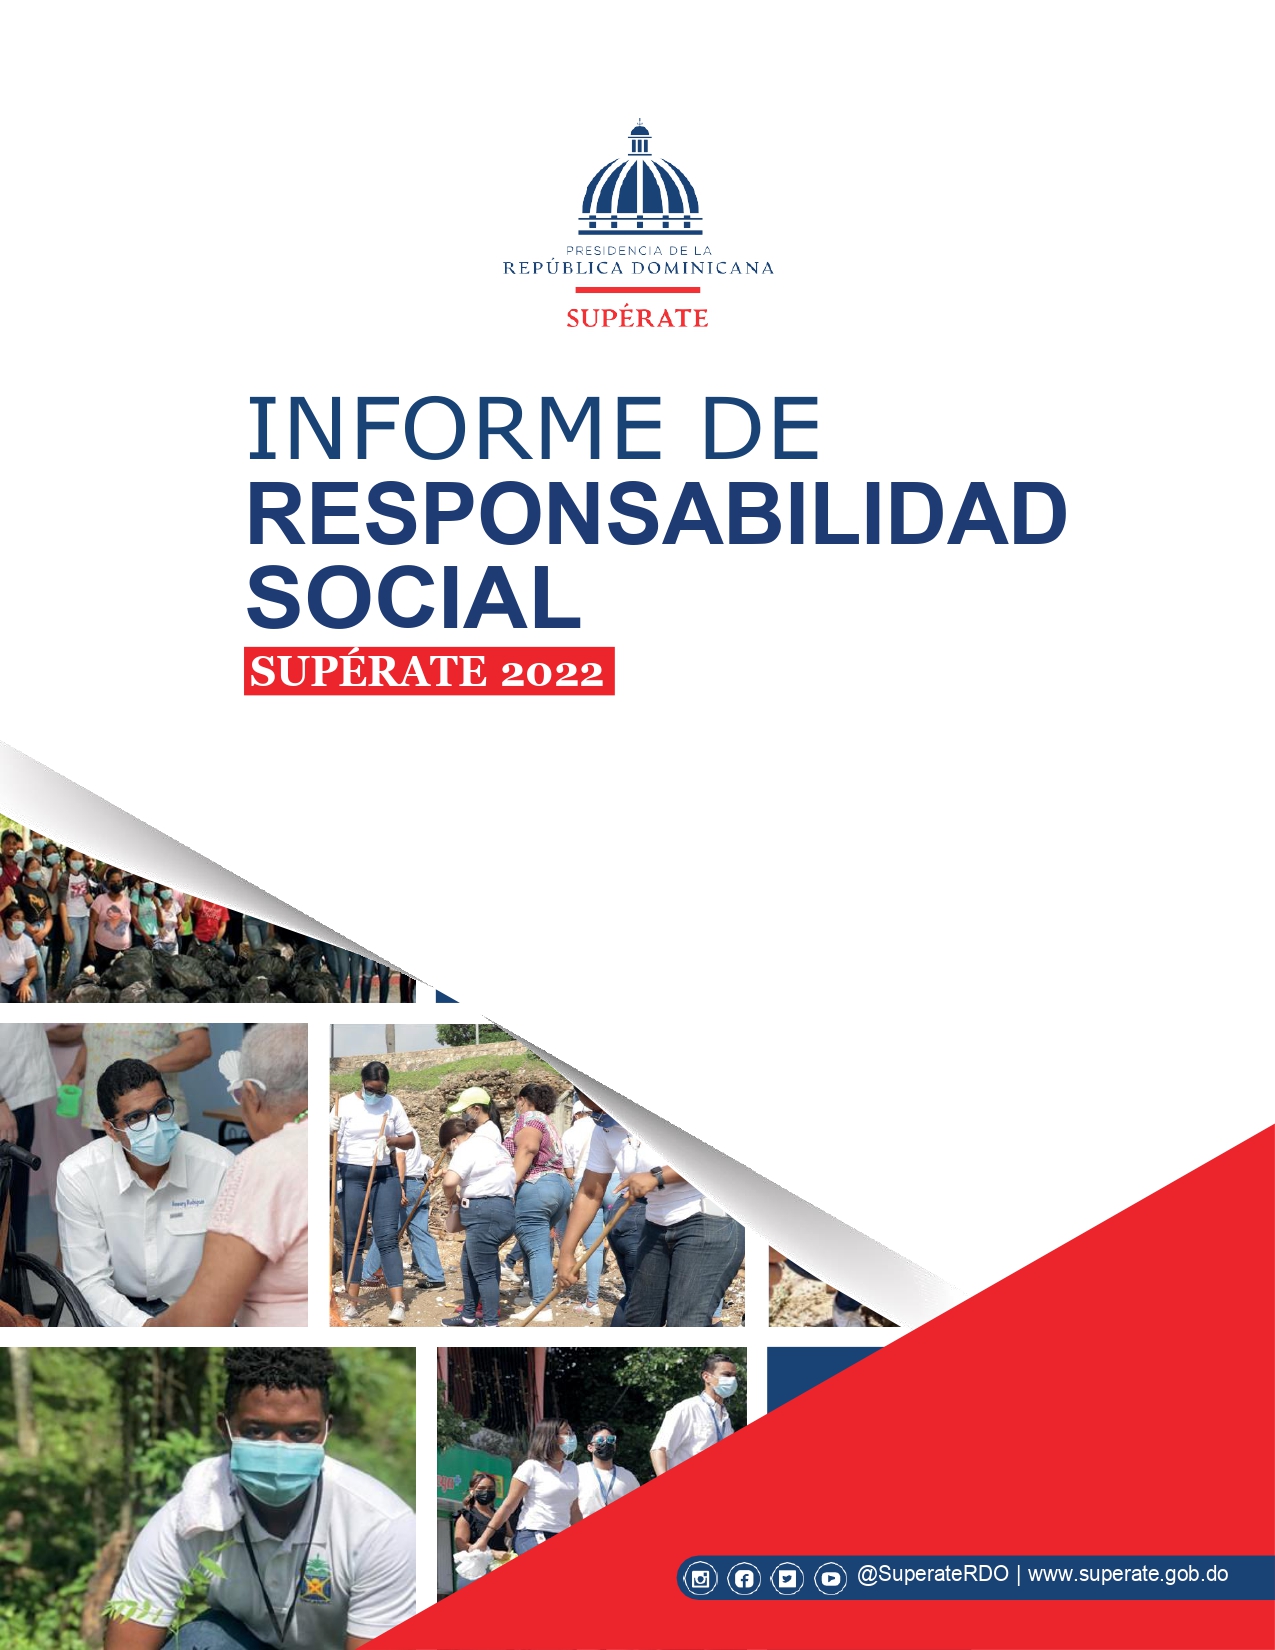 Informe de Responsabilidad Social SUPERATE 1 1 page 0001